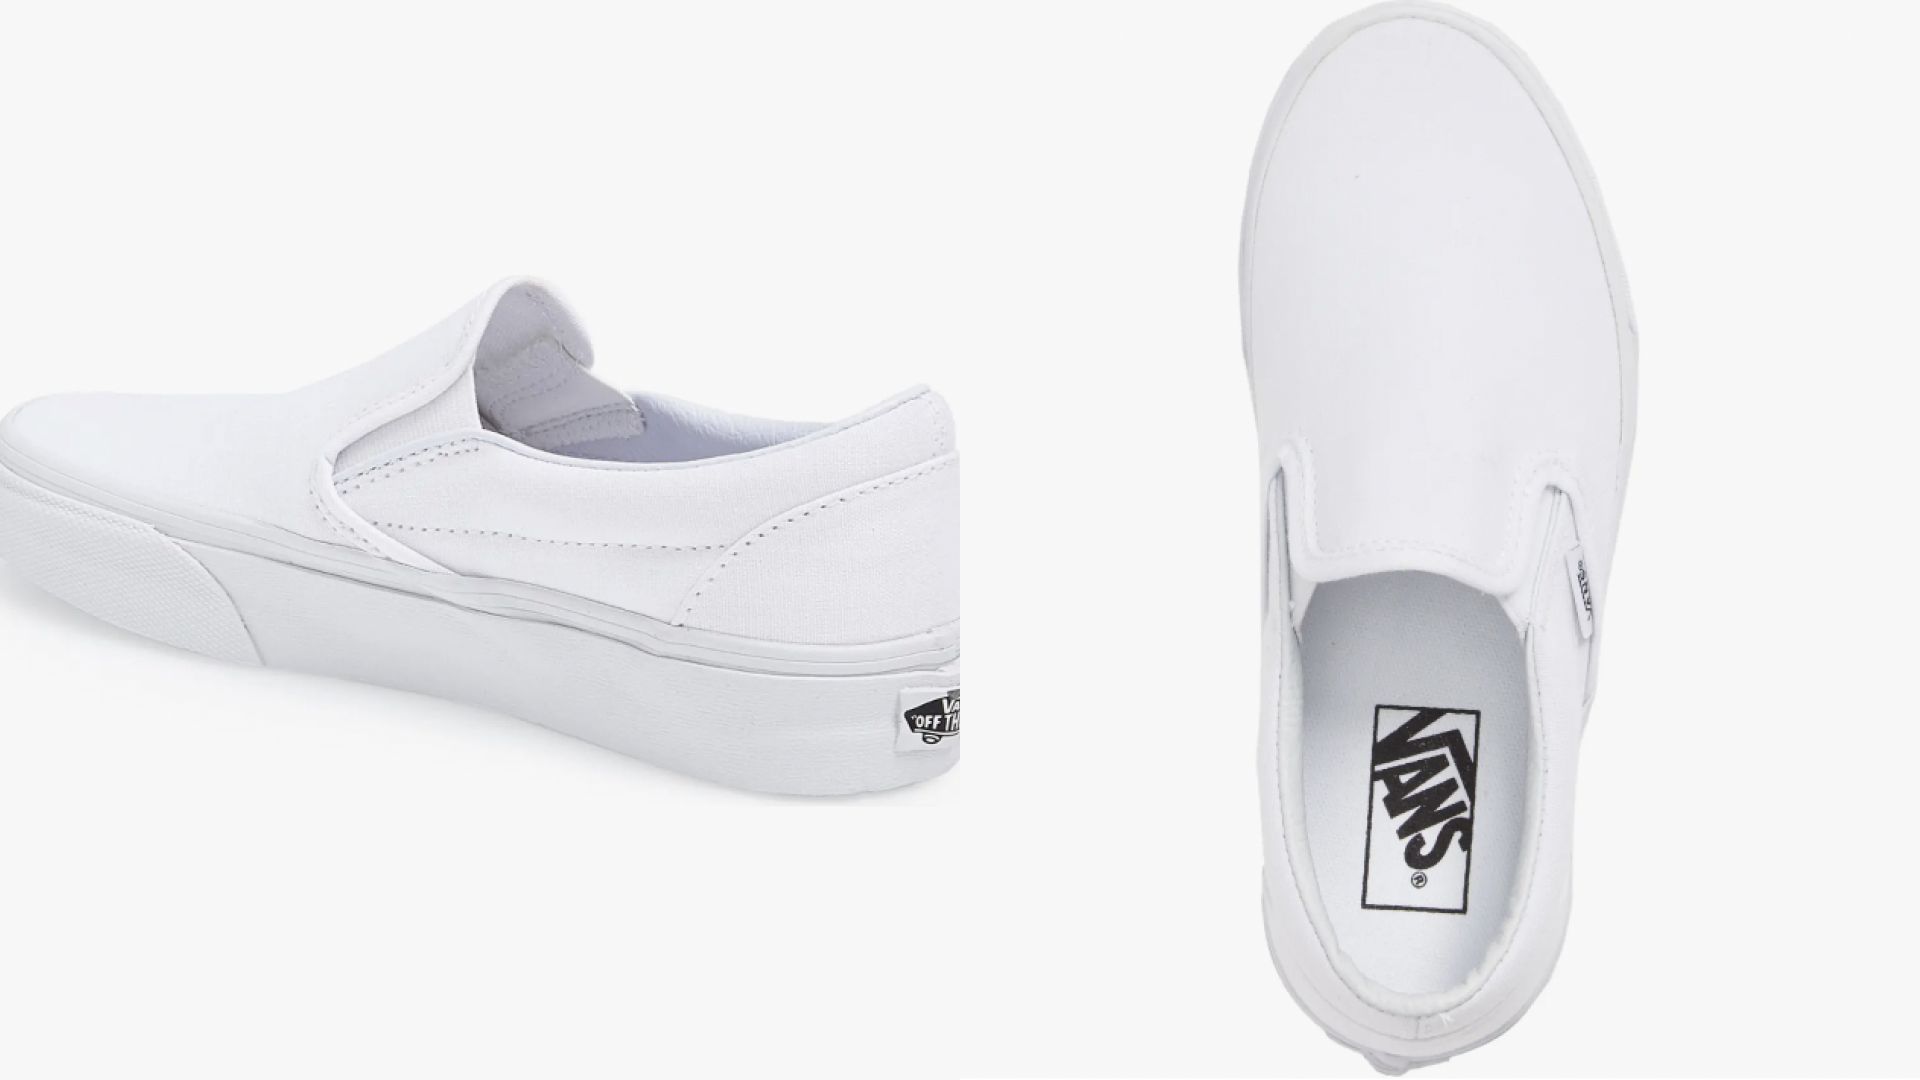 Vans white slip on shoes